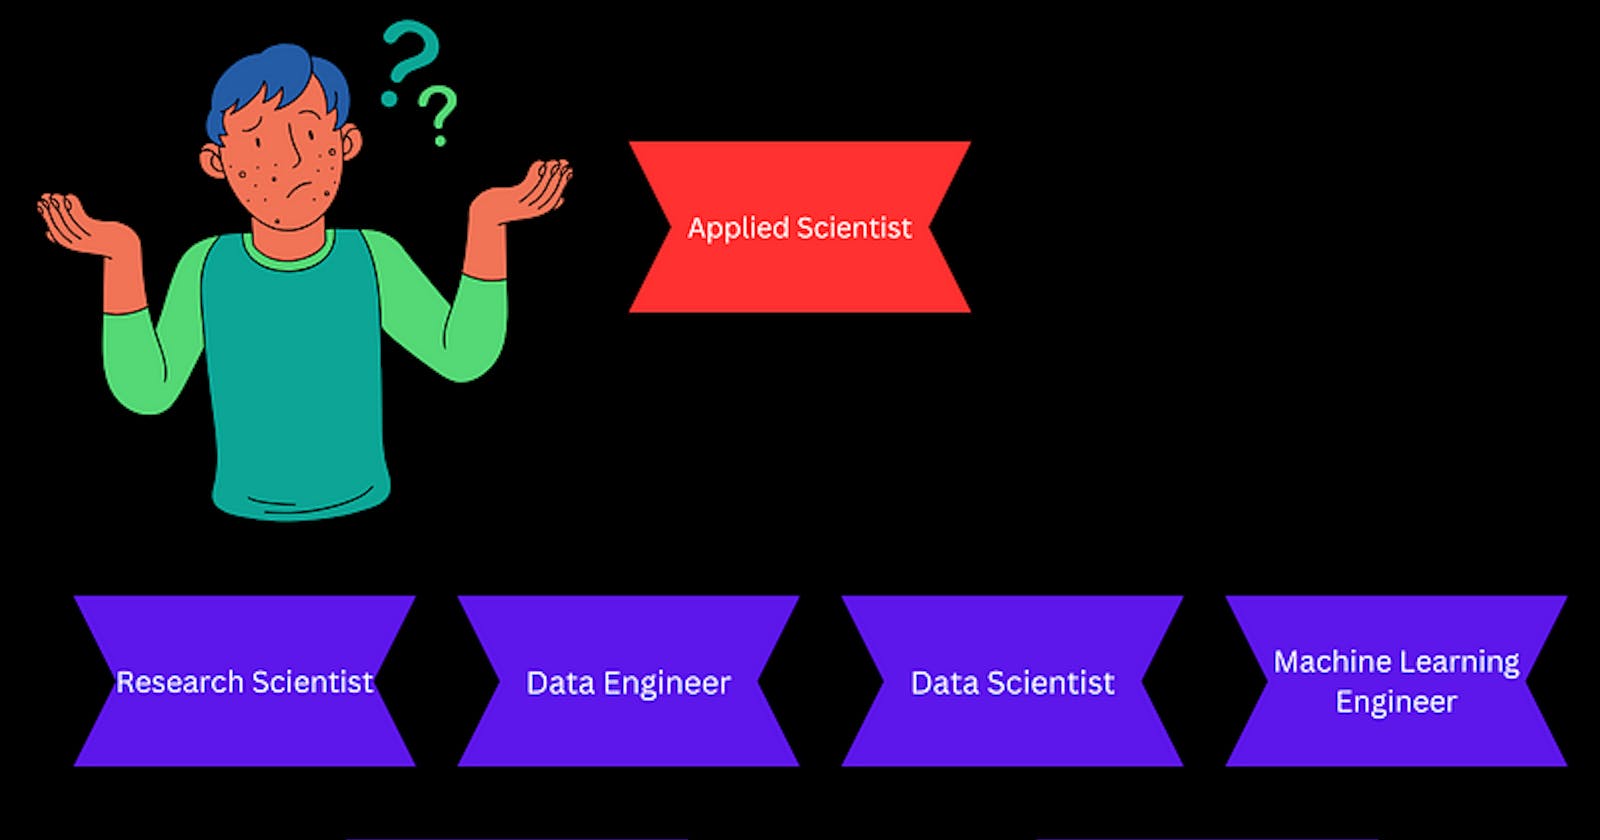 Applied Scientist or Data Scientist?